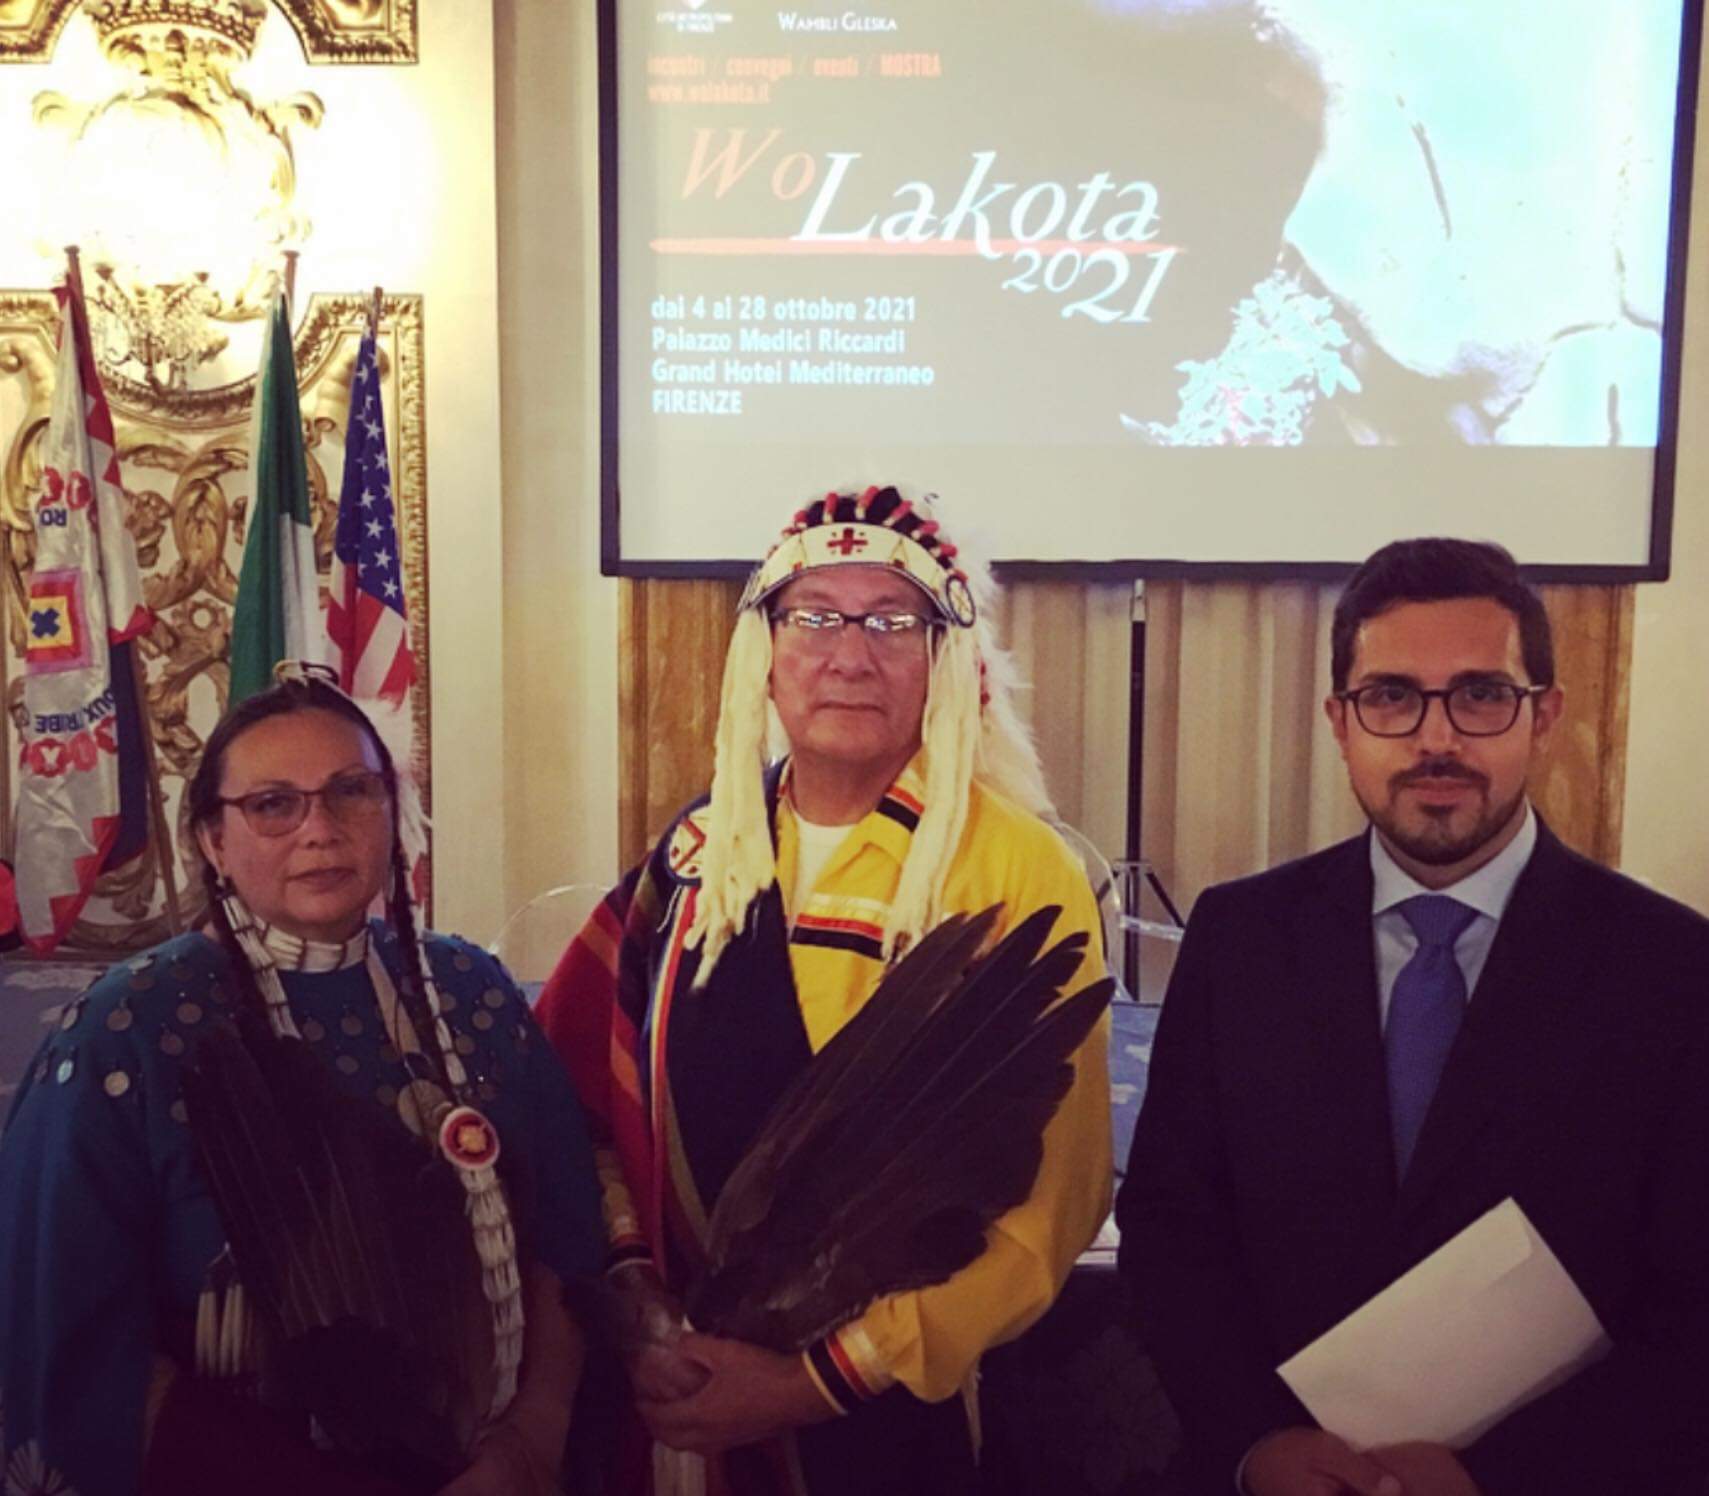 Paolo Gandola con alcuni rappresentanti dei Lakota Sioux